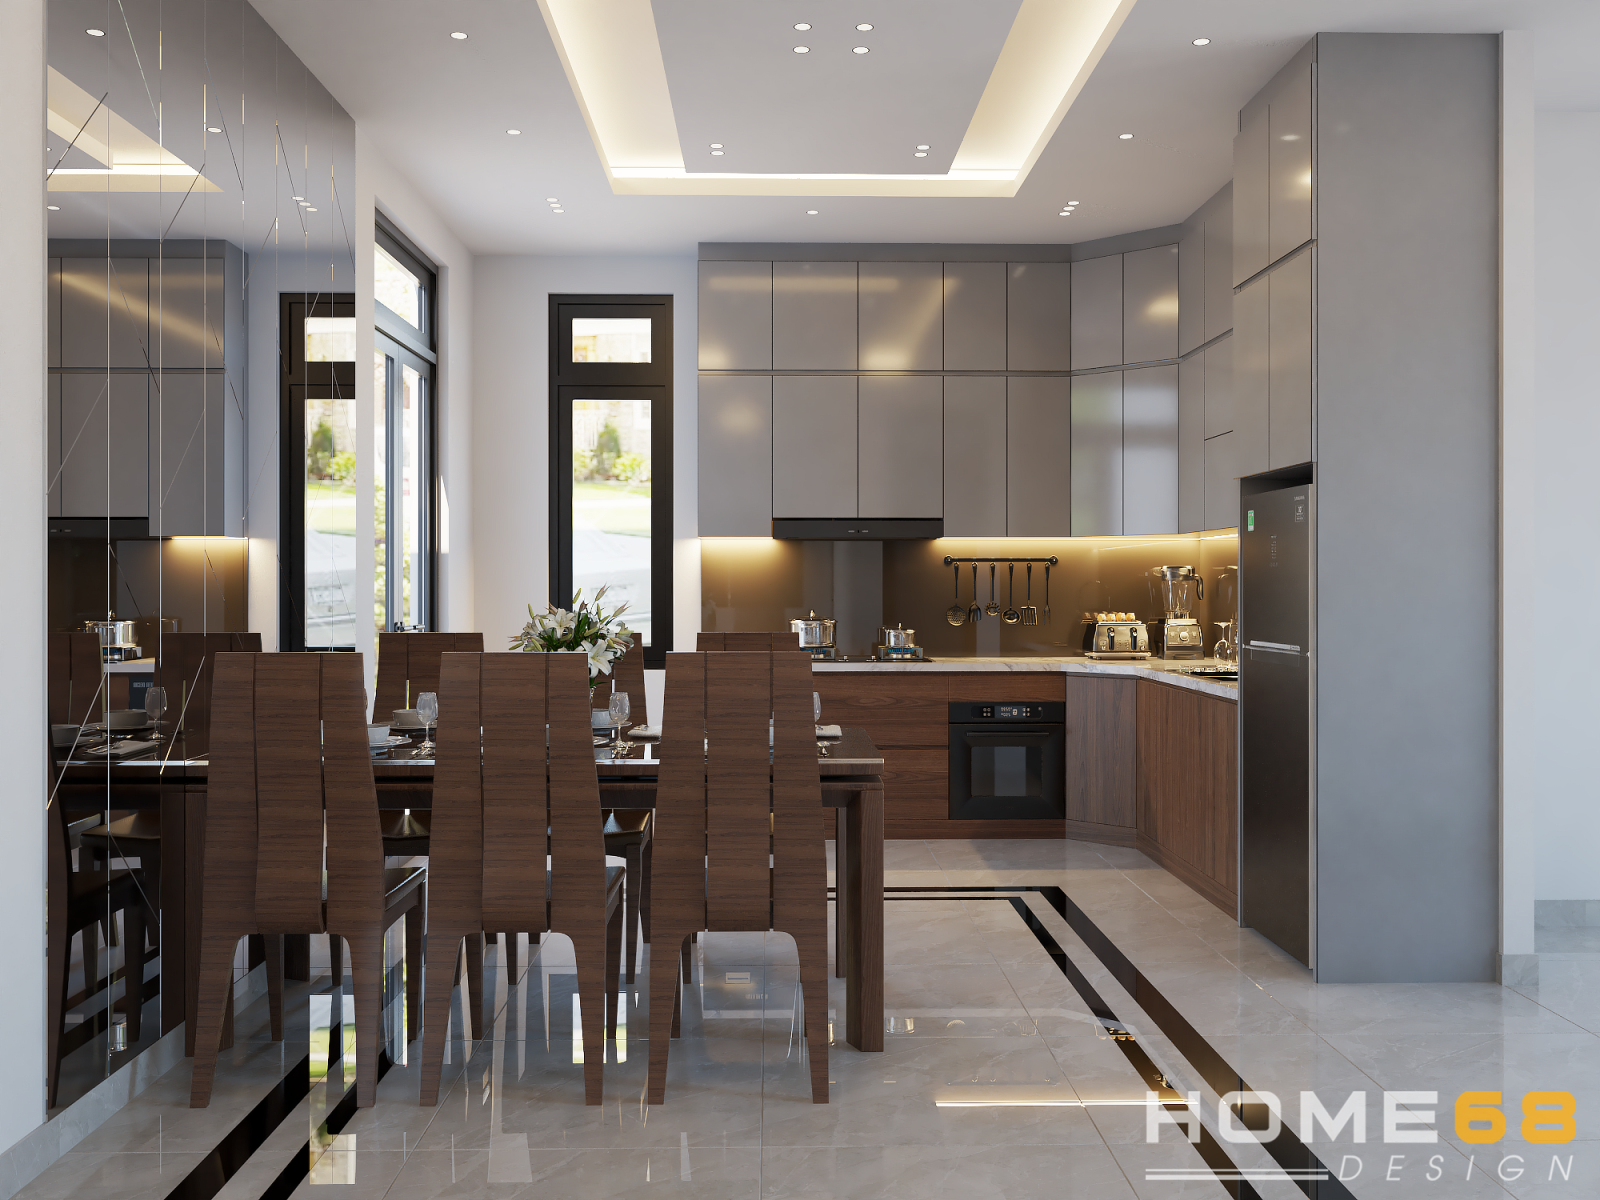 HOME68 thiết kế nội thất bếp hiện đại, sang trọng